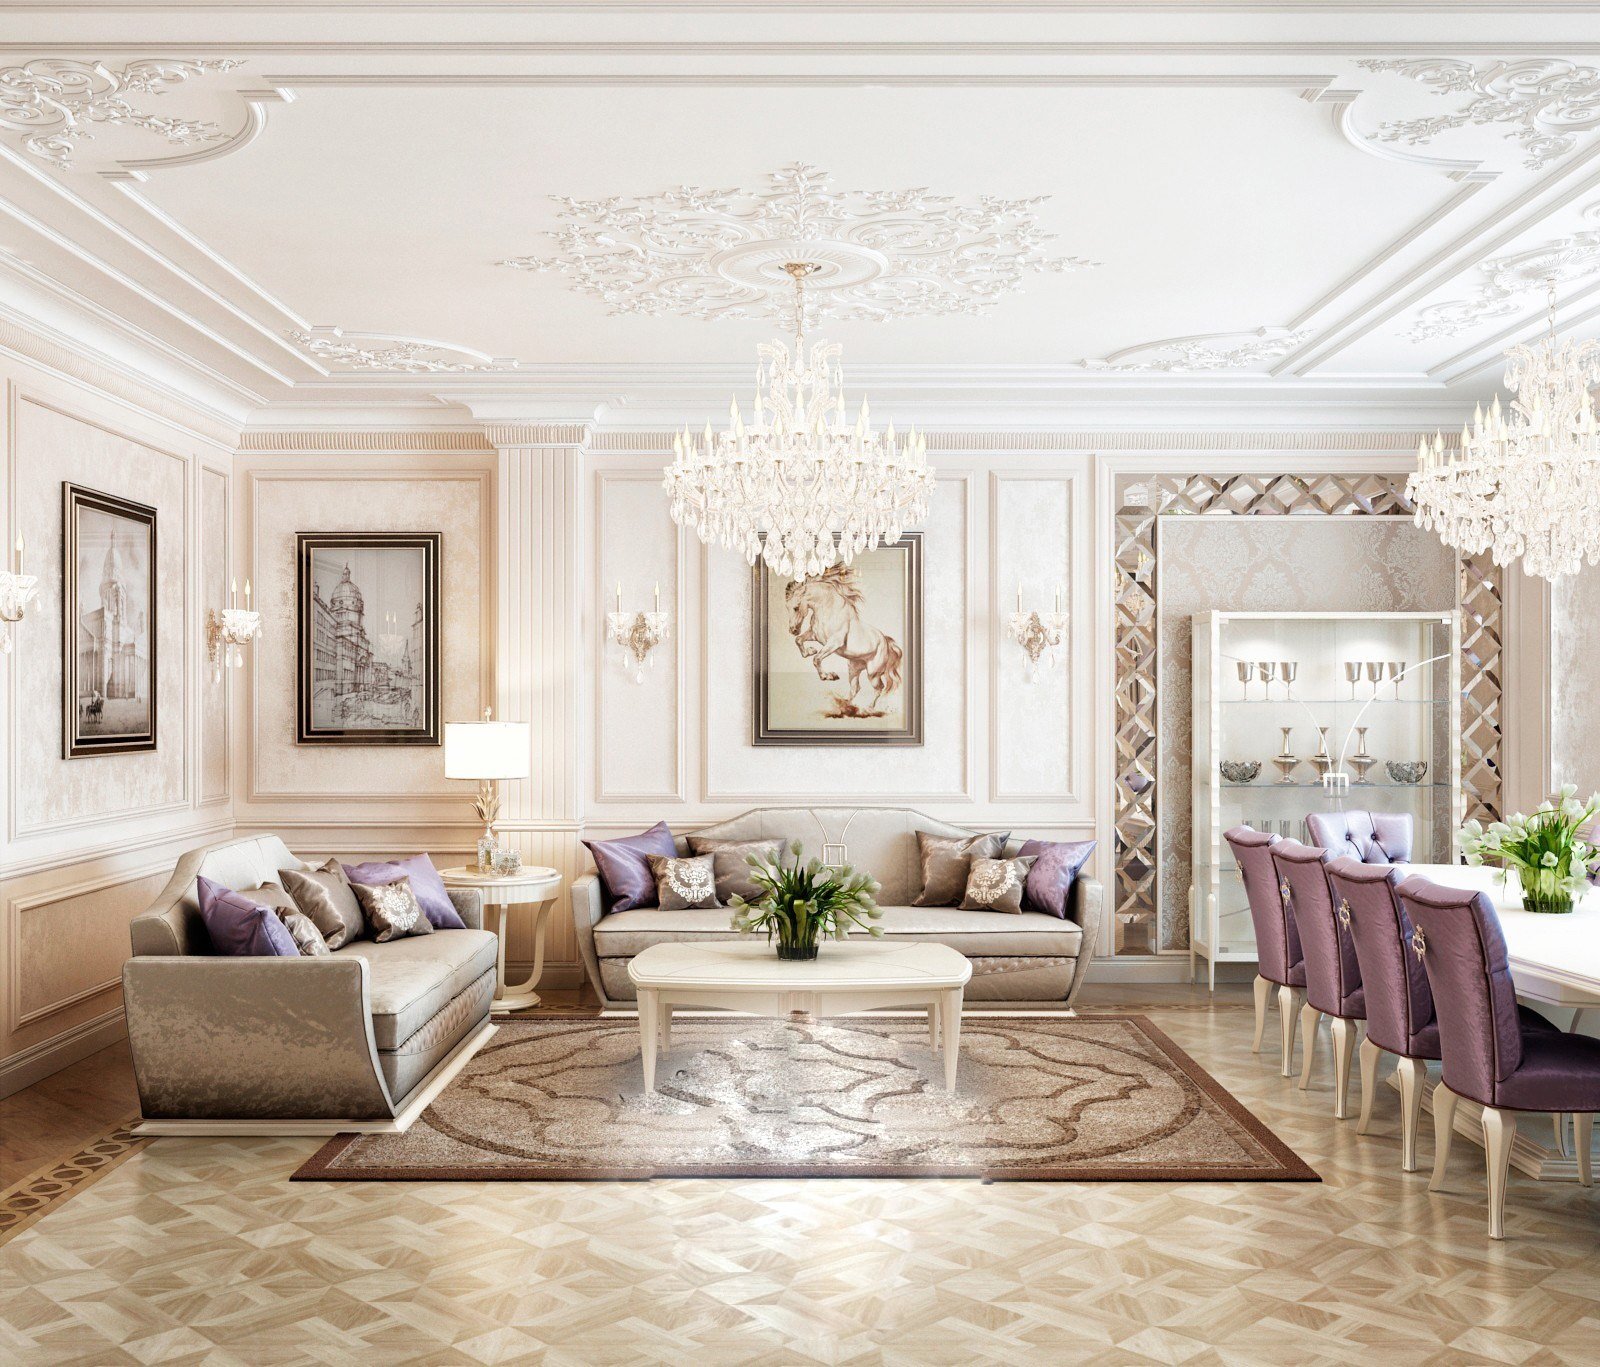 Aristocracia en el interior de la sala de estar - Luxury ...